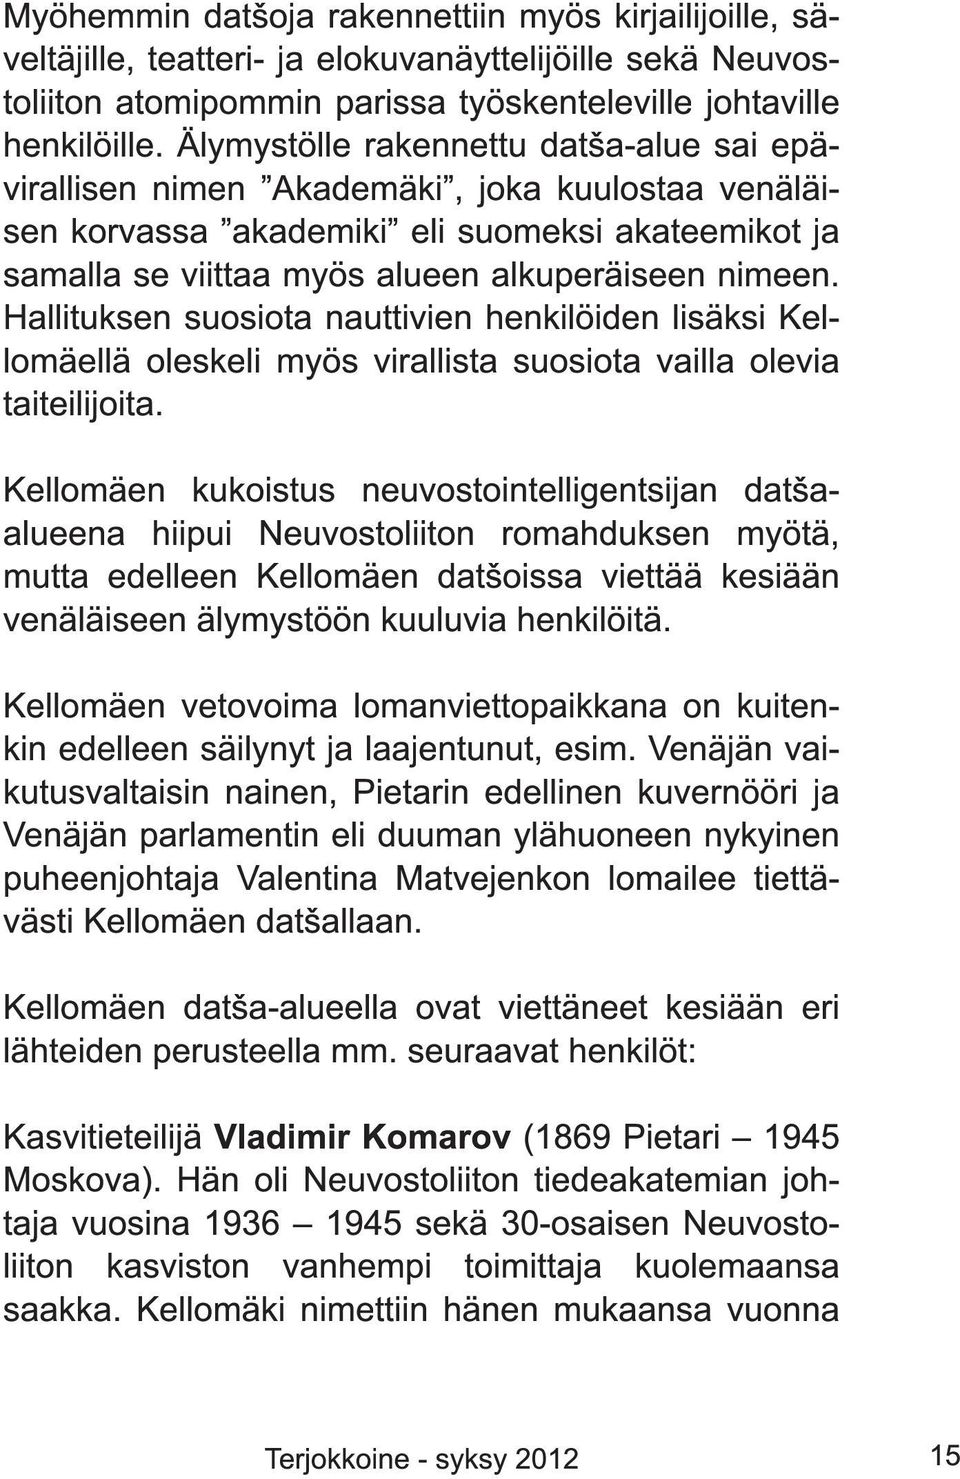 Hallituksen suosiota nauttivien henkilöiden lisäksi Kellomäellä oleskeli myös virallista suosiota vailla olevia taiteilijoita.